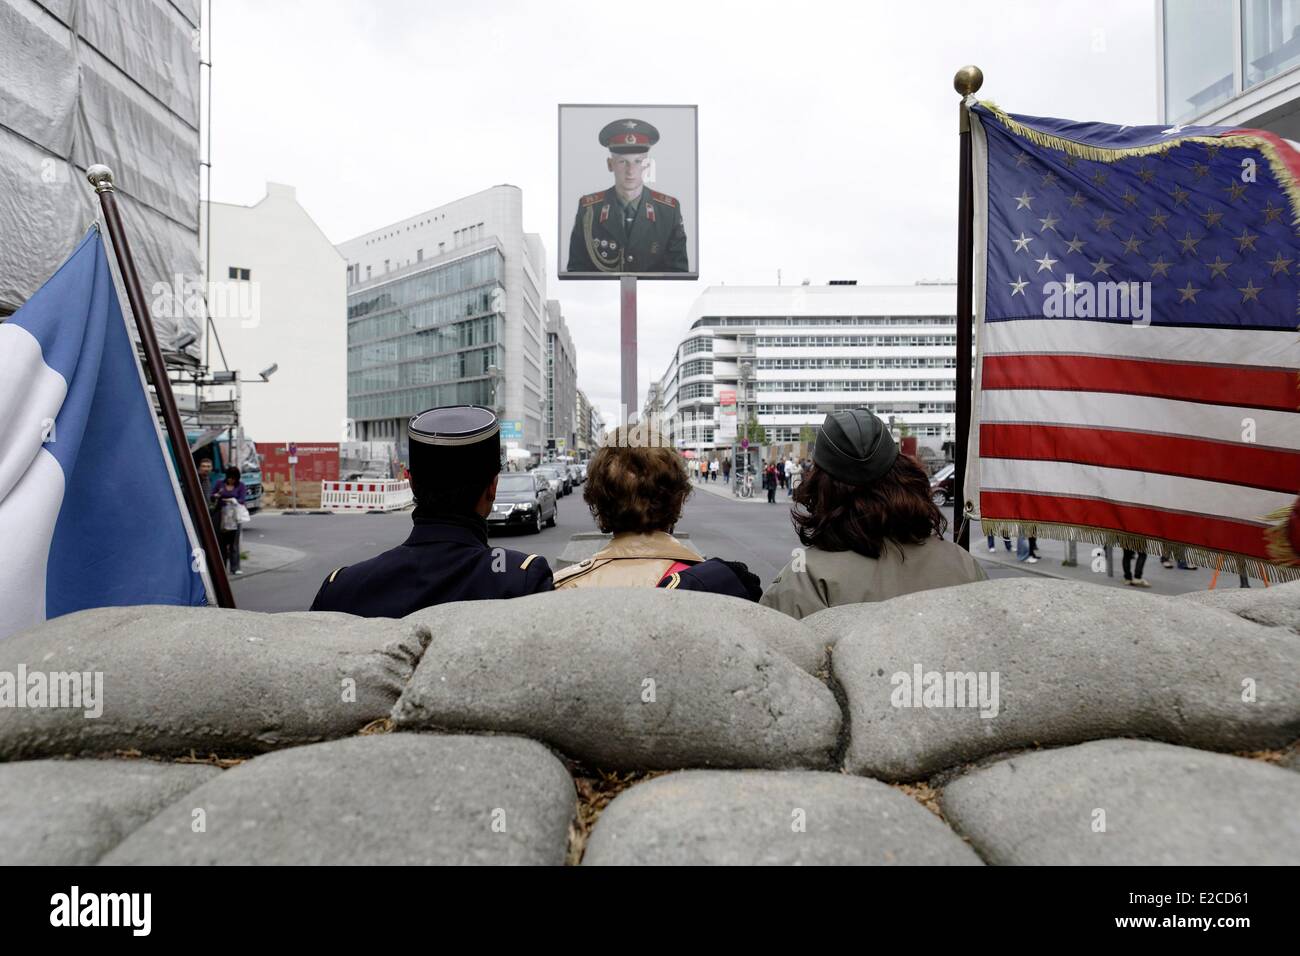 Germania, Berlino Mitte, Checkpoint Charlie (o Checkpoint C) fu il nome dato dagli Alleati occidentali per i più noti del muro di Berlino in punto di incrocio tra Berlino Est e Berlino Ovest durante la Guerra fredda Foto Stock